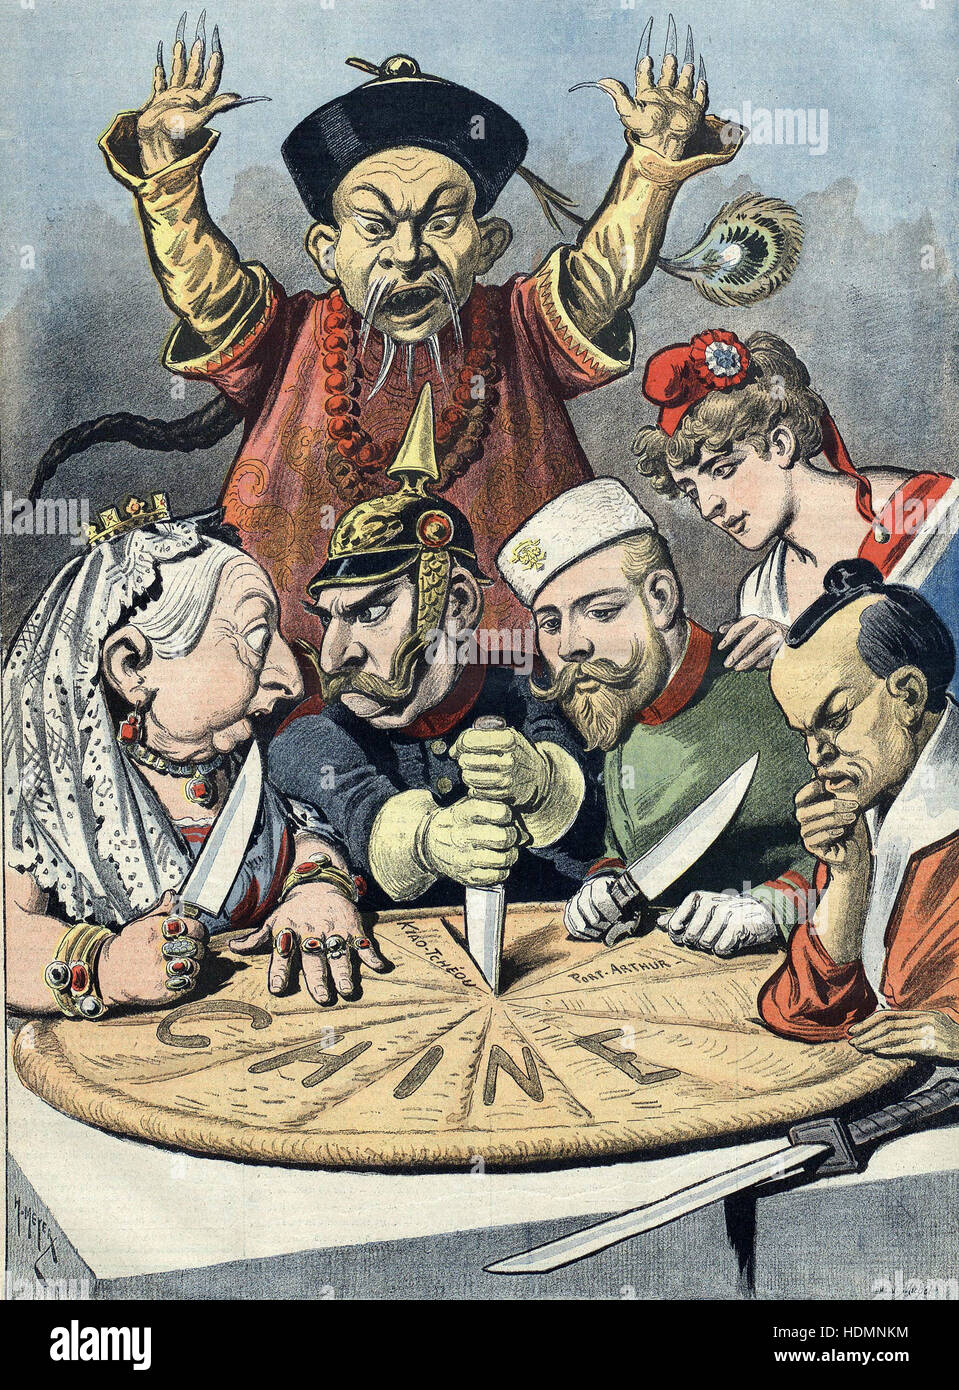 China dividido entre las potencias coloniales - Caricatura francesa Foto de stock